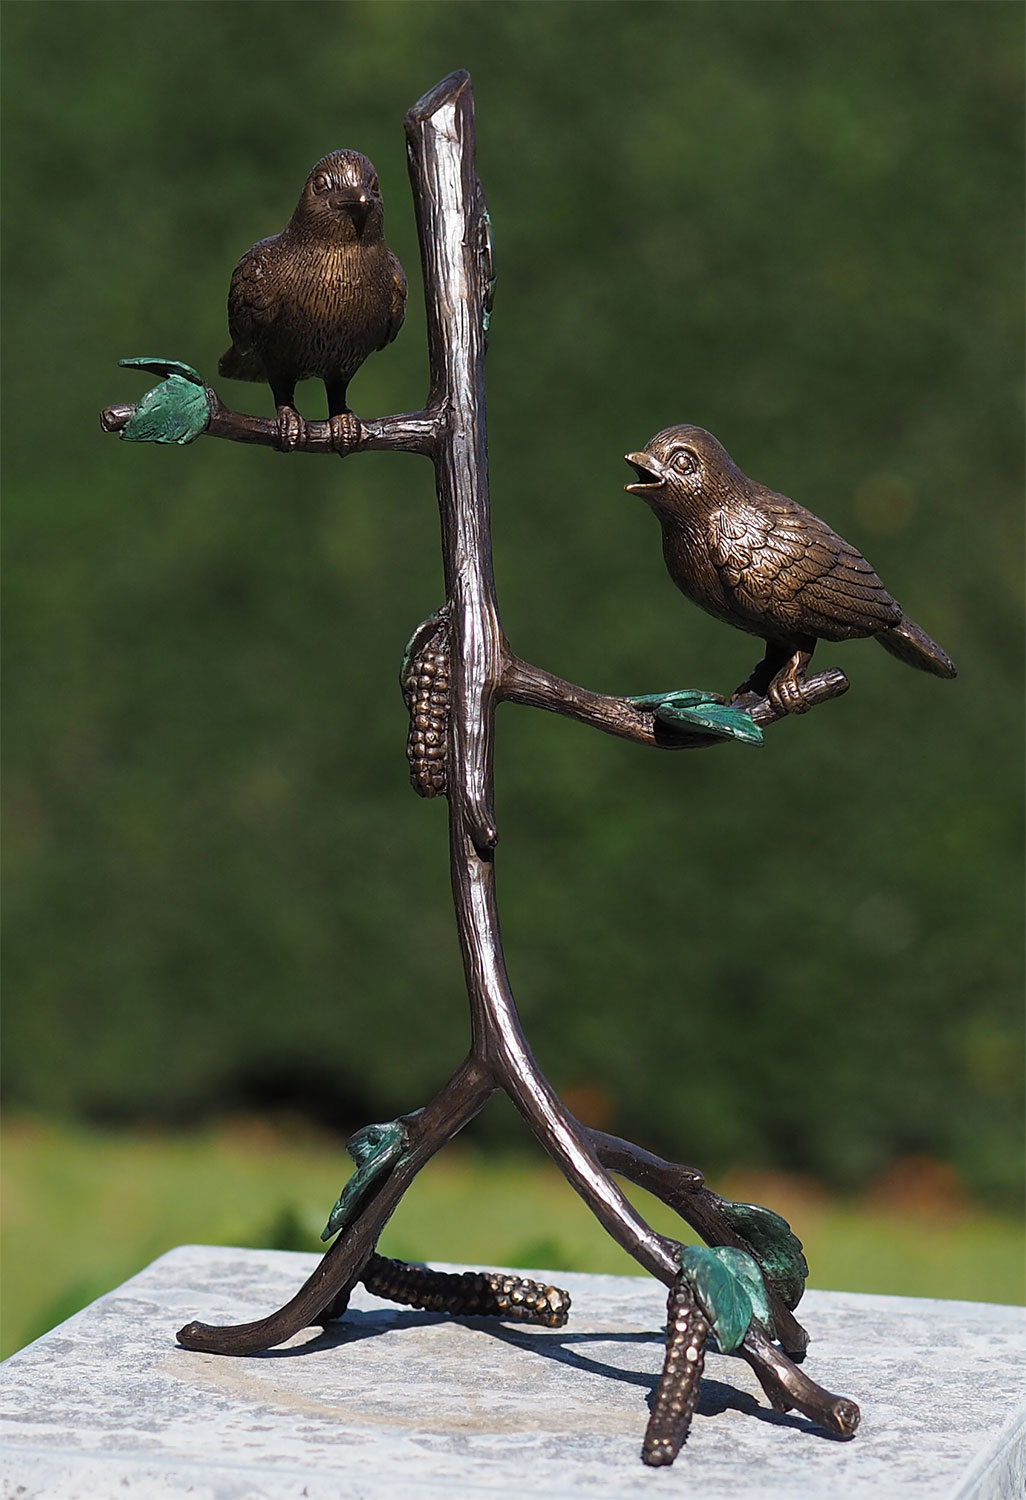 Gartenskulptur 'Vögel auf Ast', Bronze